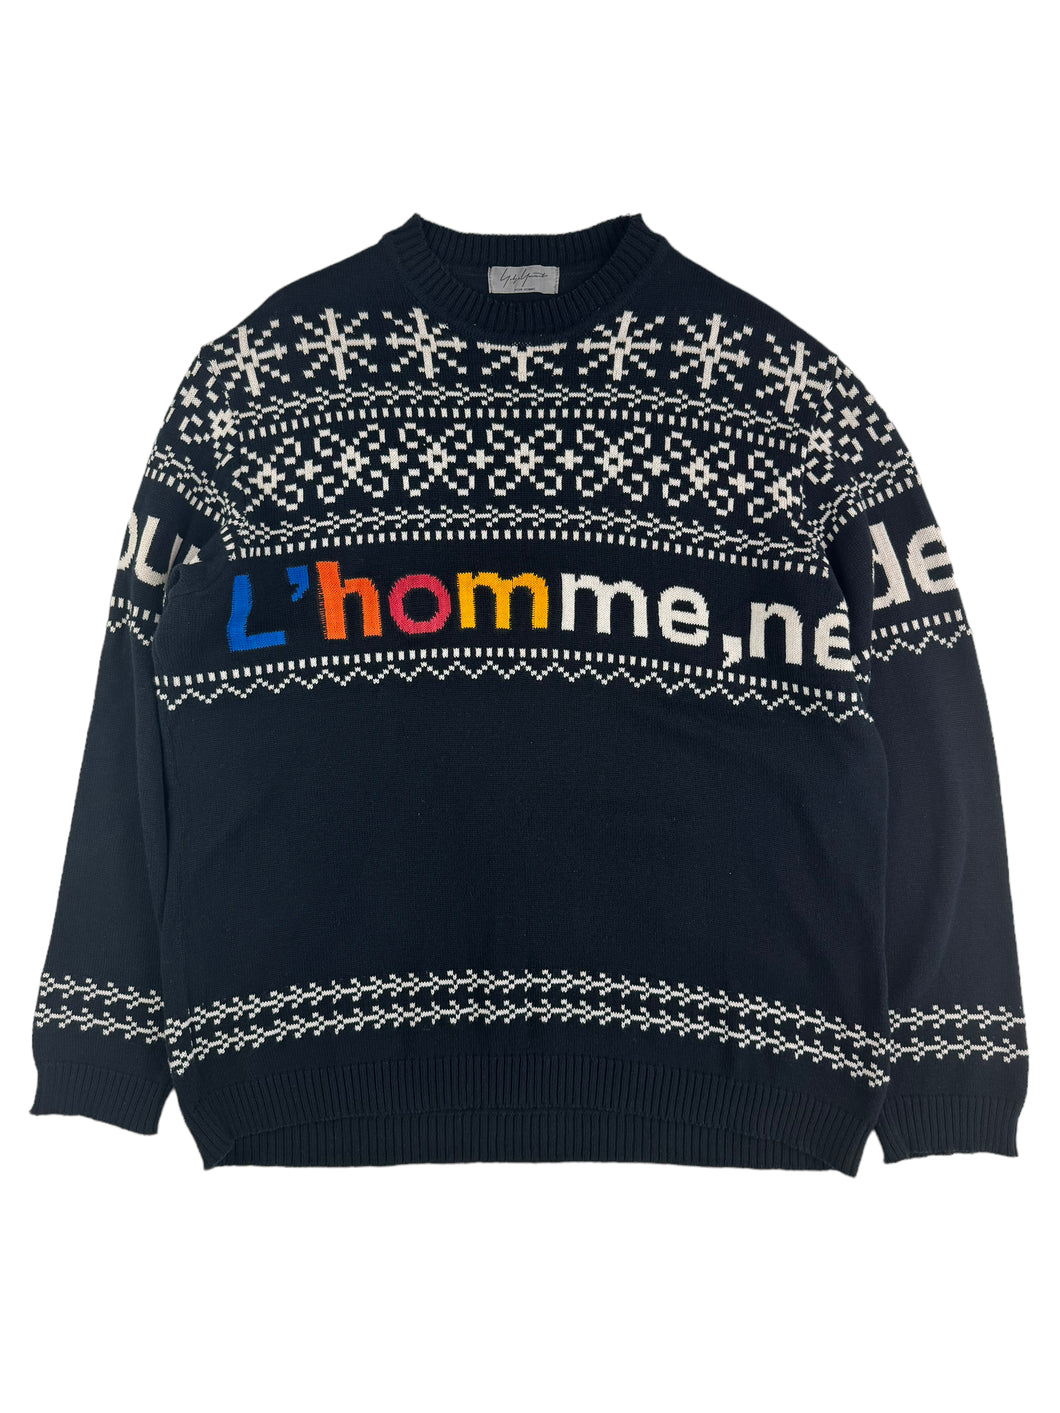 AW16 Yohji Yamamoto Pour Homme Knit Sweater (Size 3)